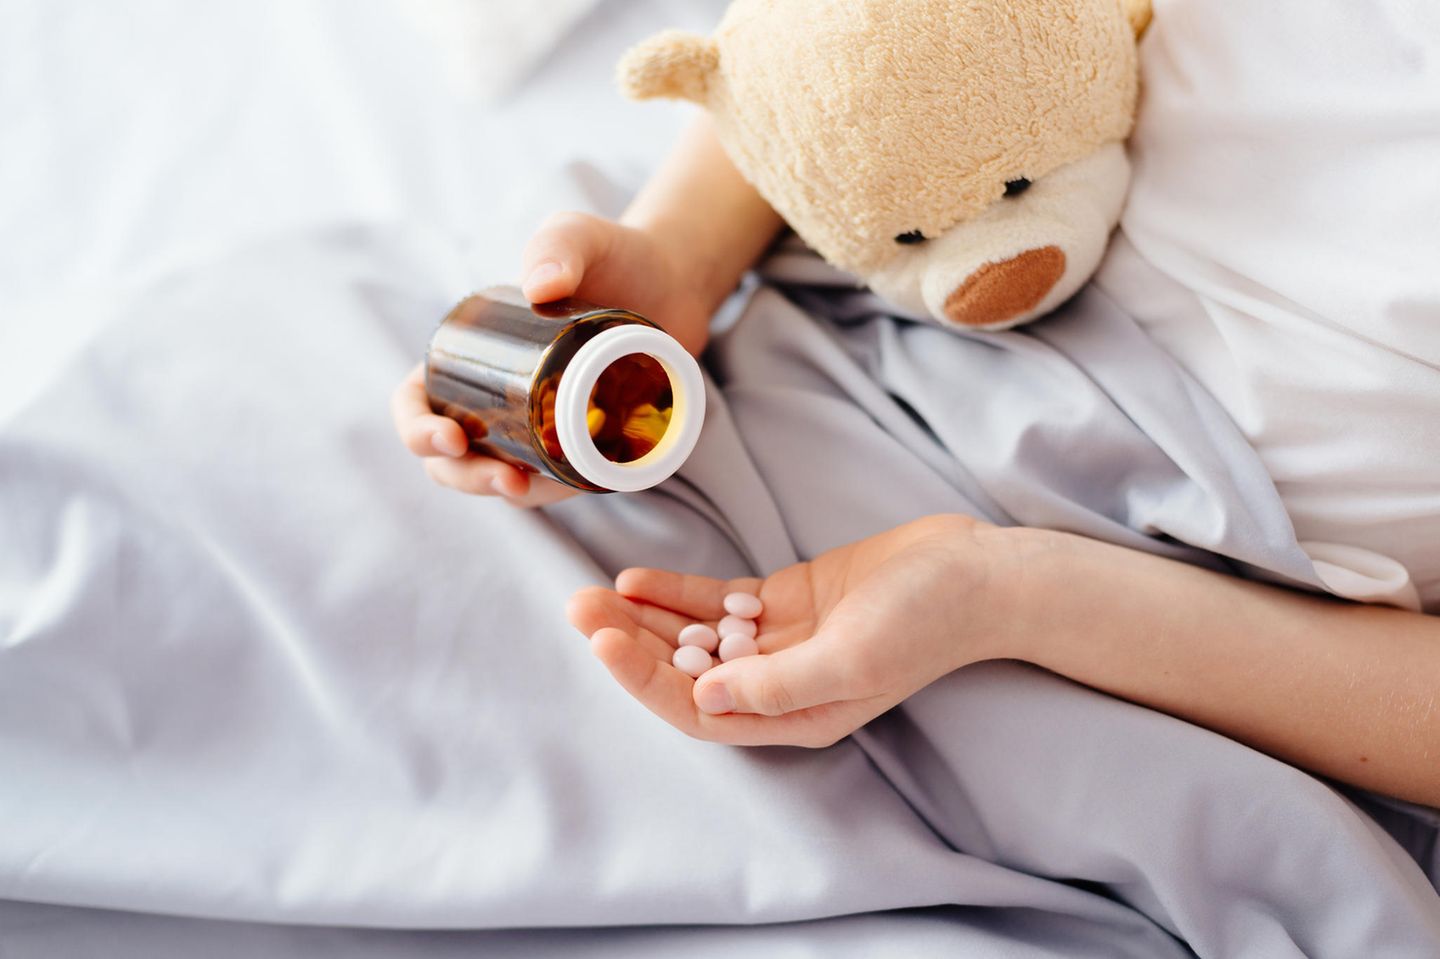 Vater gibt Kindern keine Medizin: Kinderhände mit Tabletten